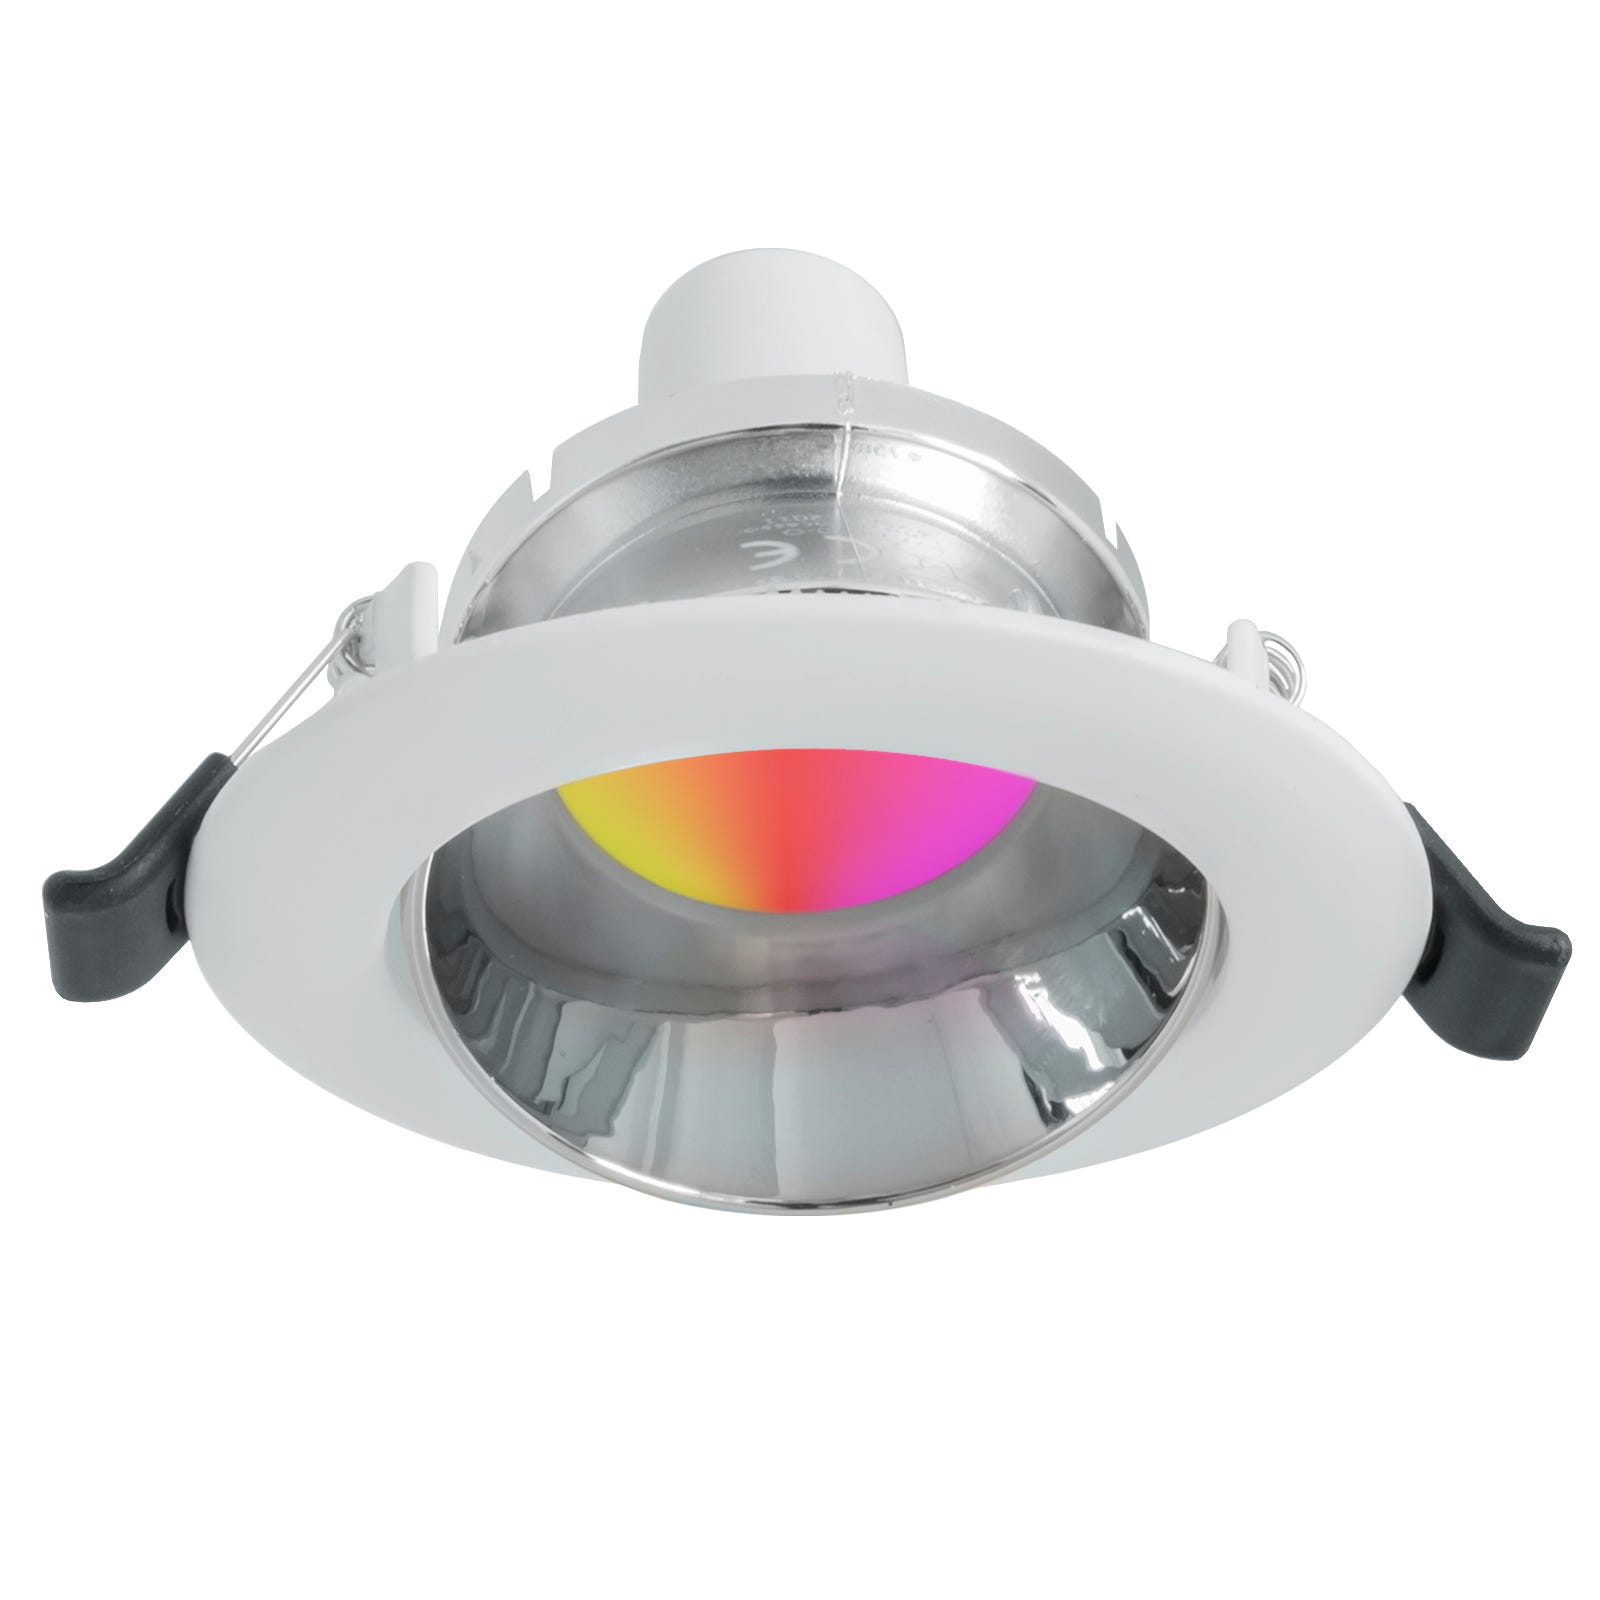 Spot LED RGB 6W multicolore 12V encastré 6cm rond RGBW effets lumineux  colorés bateau camping-car SILVER-LIGHT RGBW 3000K